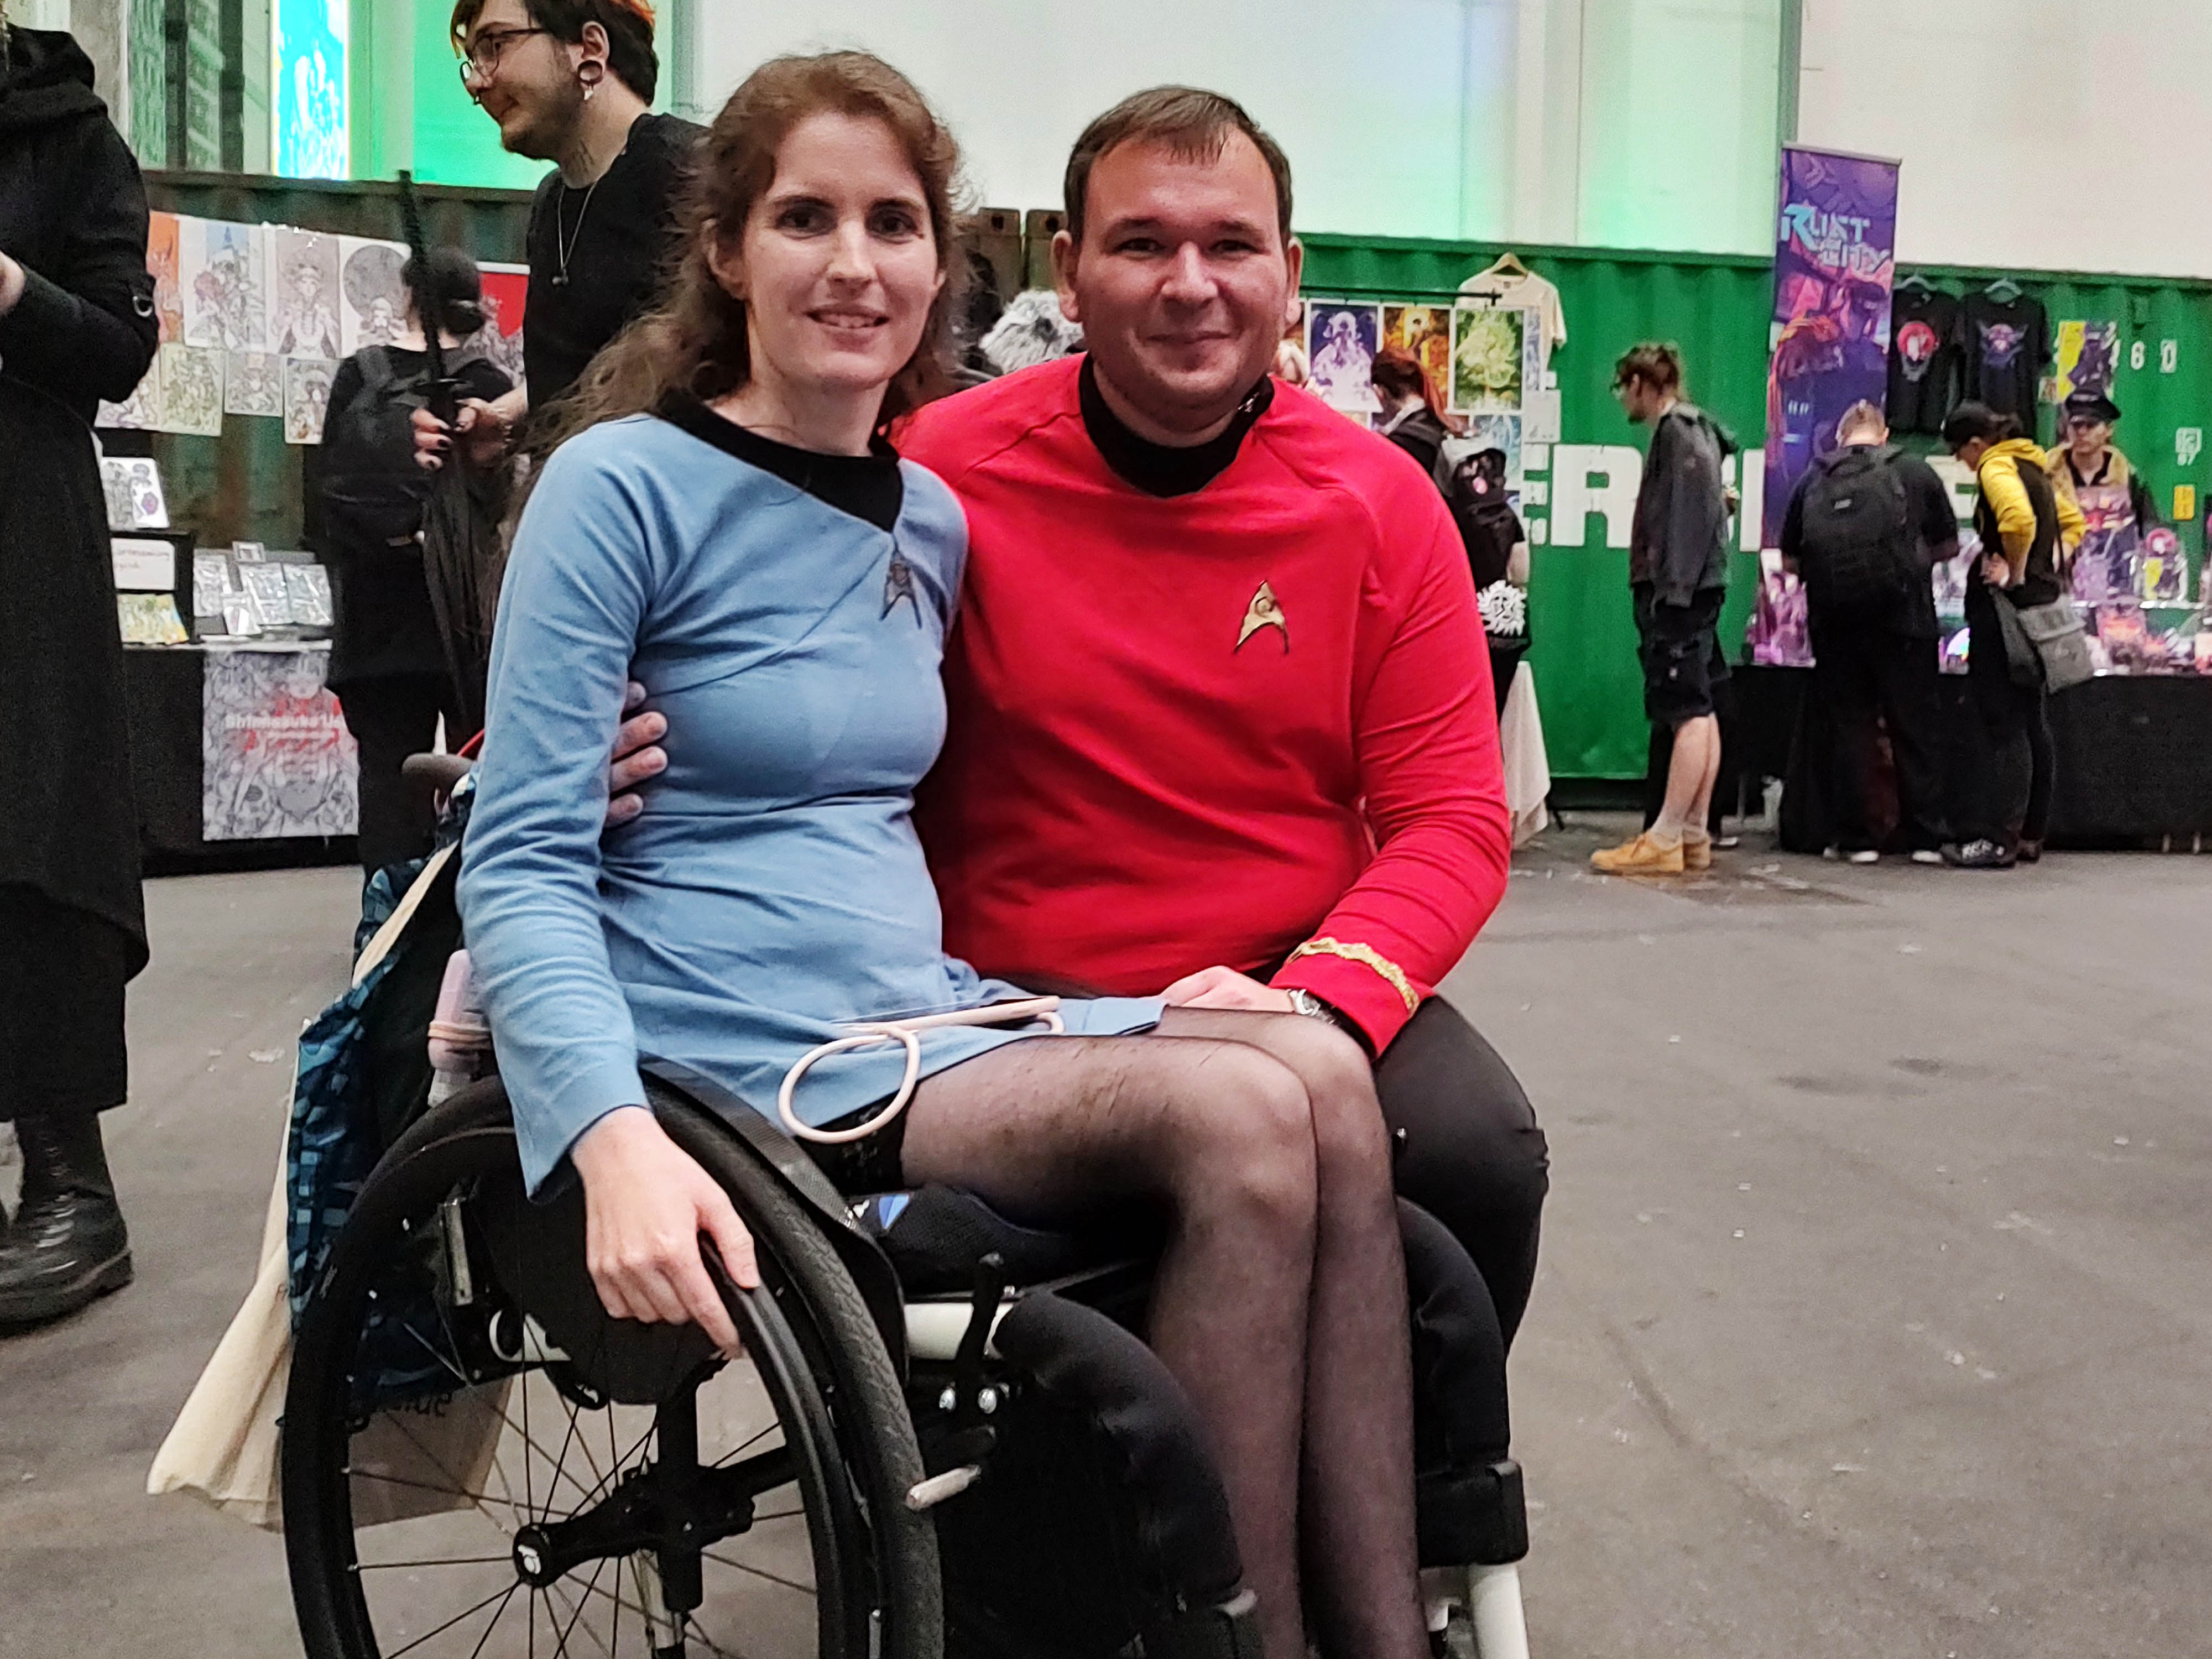 Eine Frau im Rollstuhl und ein Mann tragen Star-Treck-Uniformen in blau und rot.